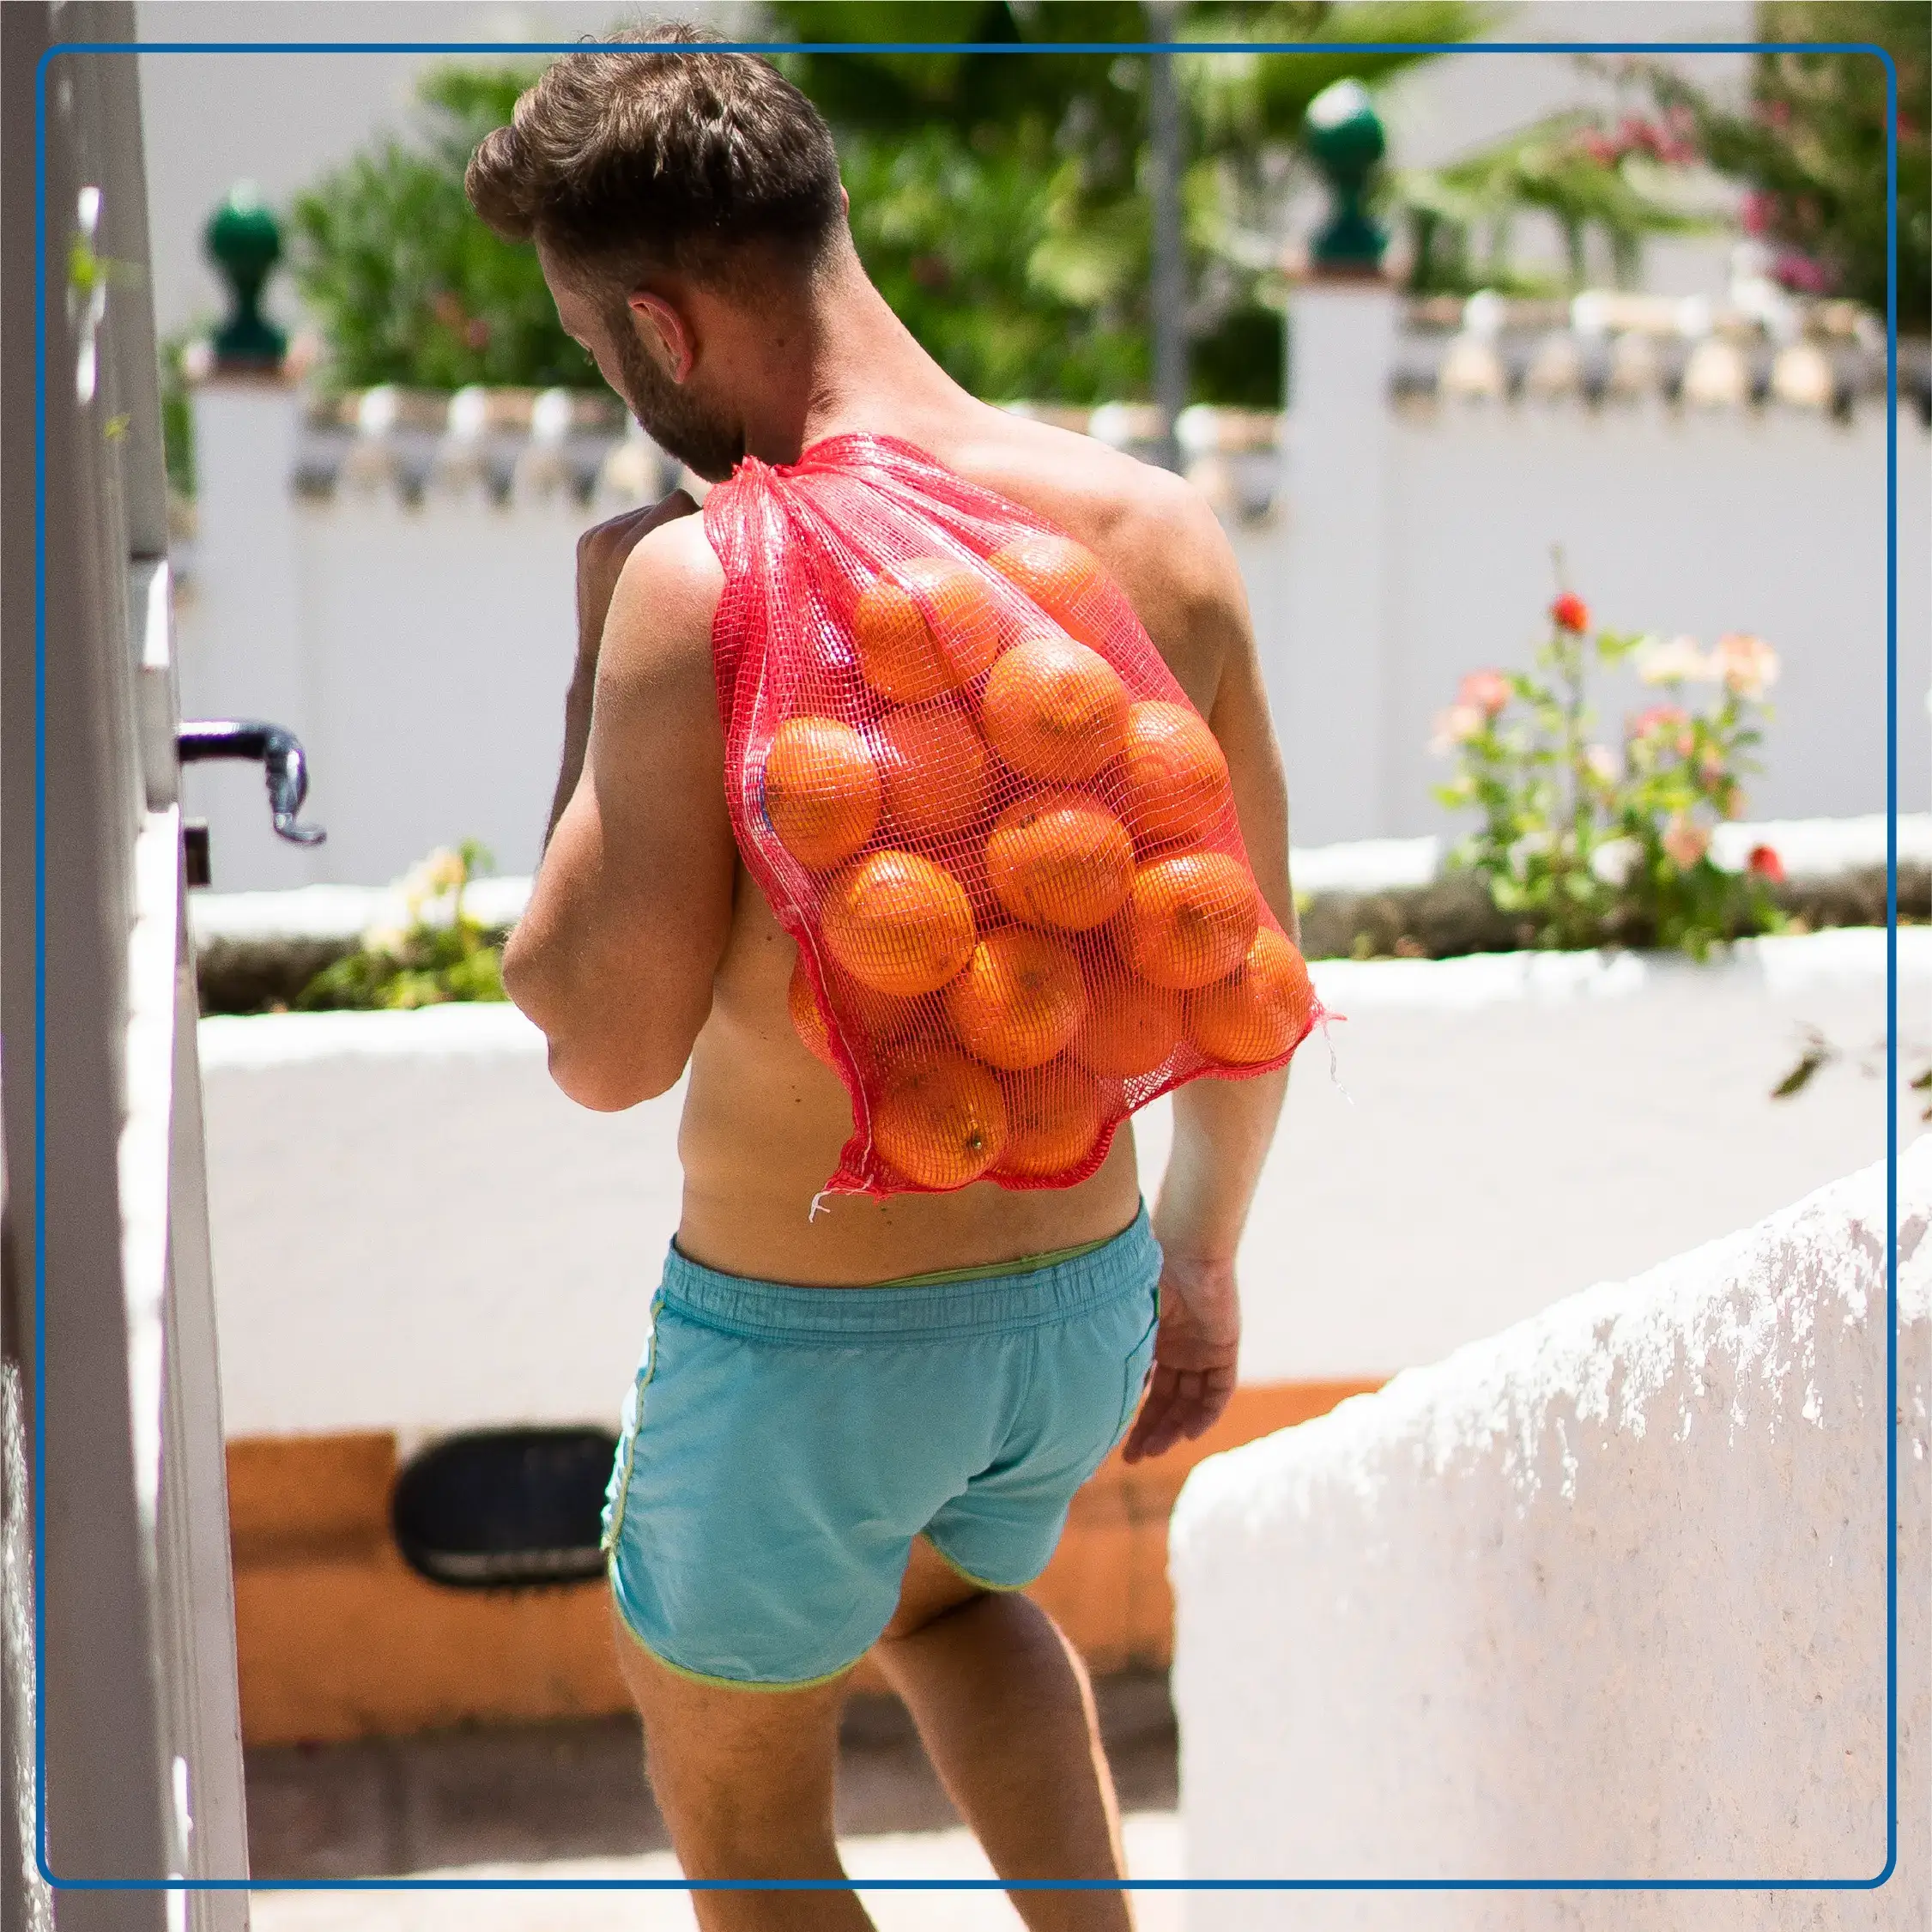 Immagine di un uomo in costume con un sacco di arance sulle spalle. Immagine rappresentativa dello stile di vita mediterraneo. Foto di accompagnamento all'articolo "La Dieta Mediterranea in un’ottica di Nutrizione Clinica".